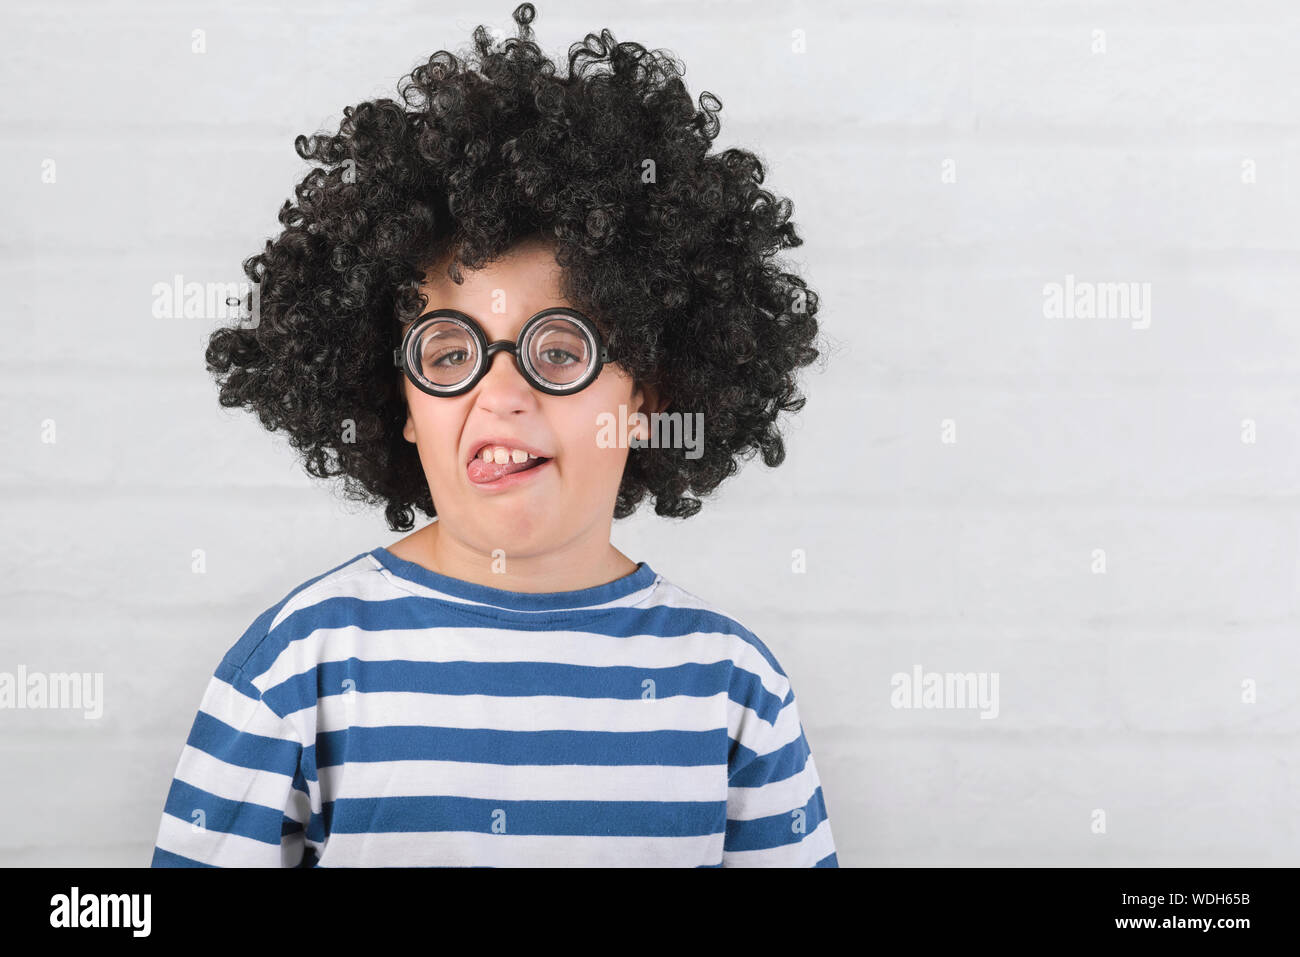 Funny enfant faisant une grimace portant des lunettes nerd sur fond brique Banque D'Images